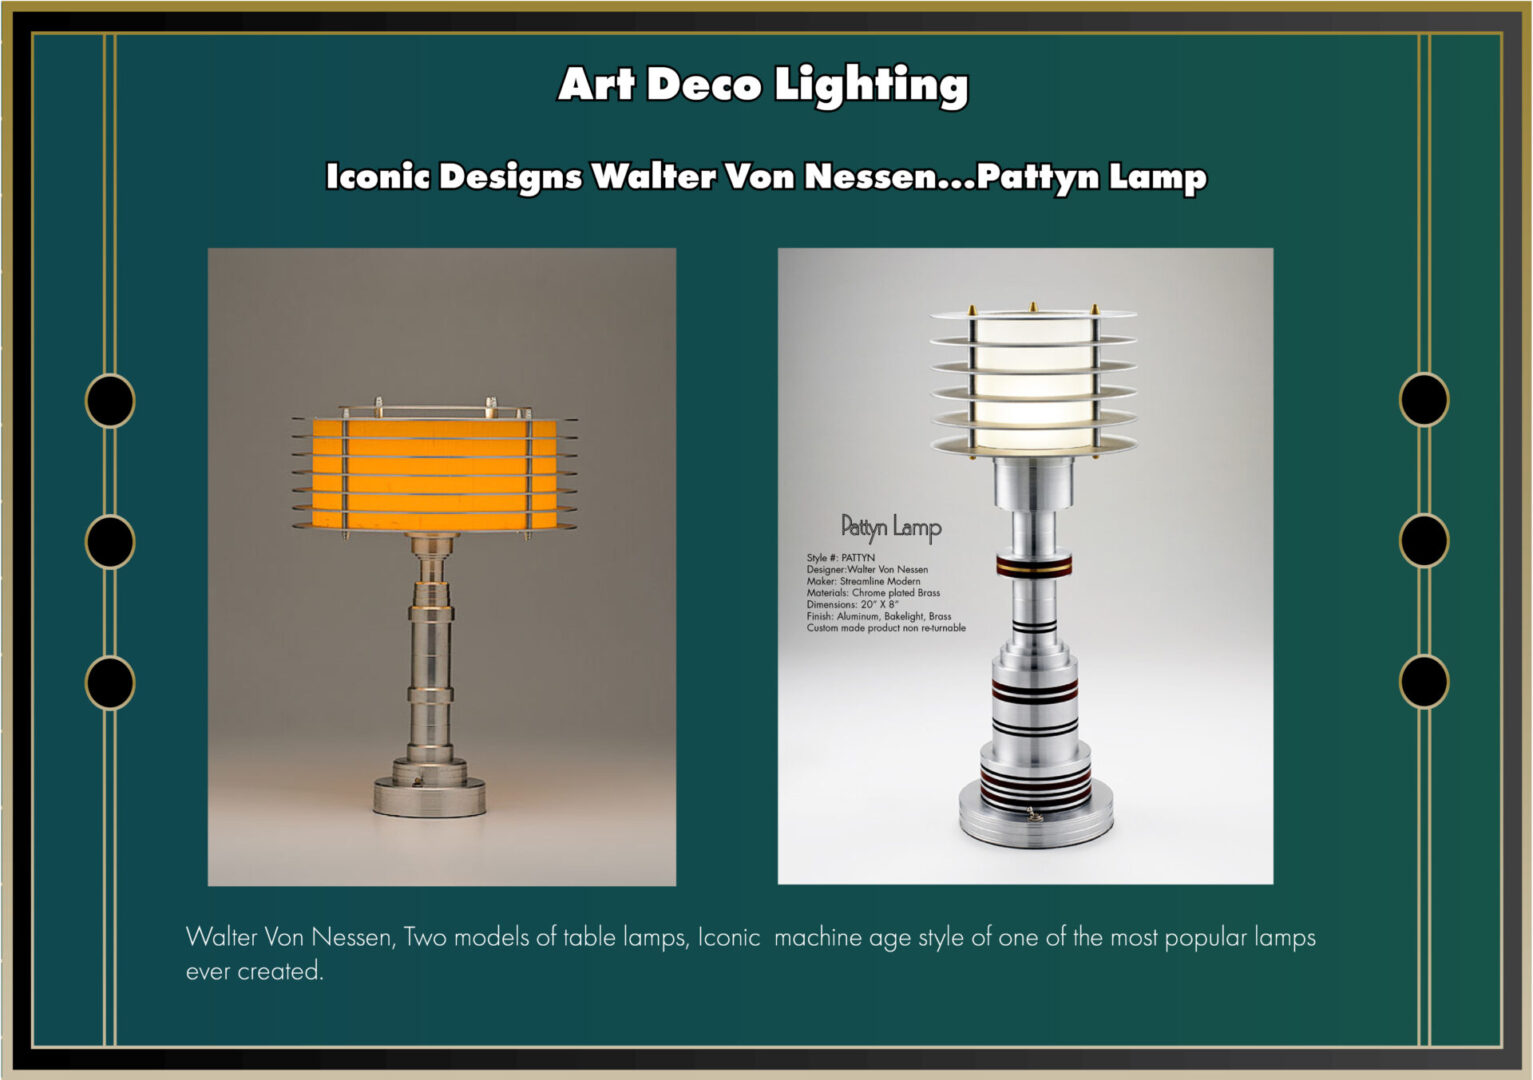 Iconic lamp designs by Walter Von Nessen